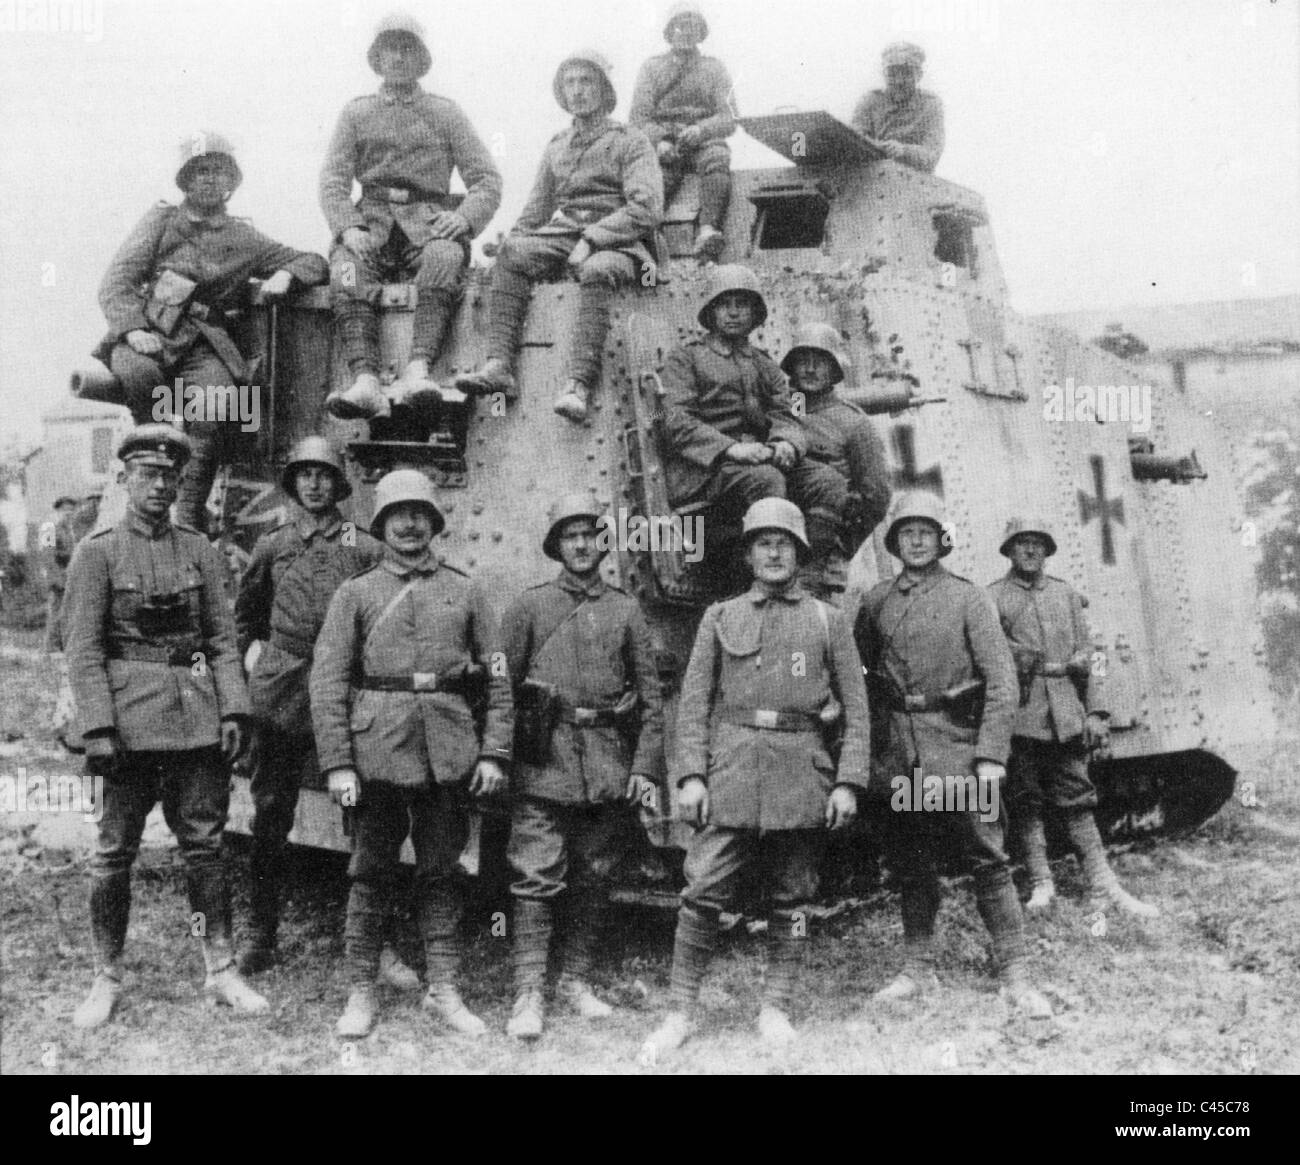 Первая п четвертая т. A7v танк экипаж. Танкисты первой мировой войны 1914-1918. Первый немецкий танк a7v. A7v 1918.